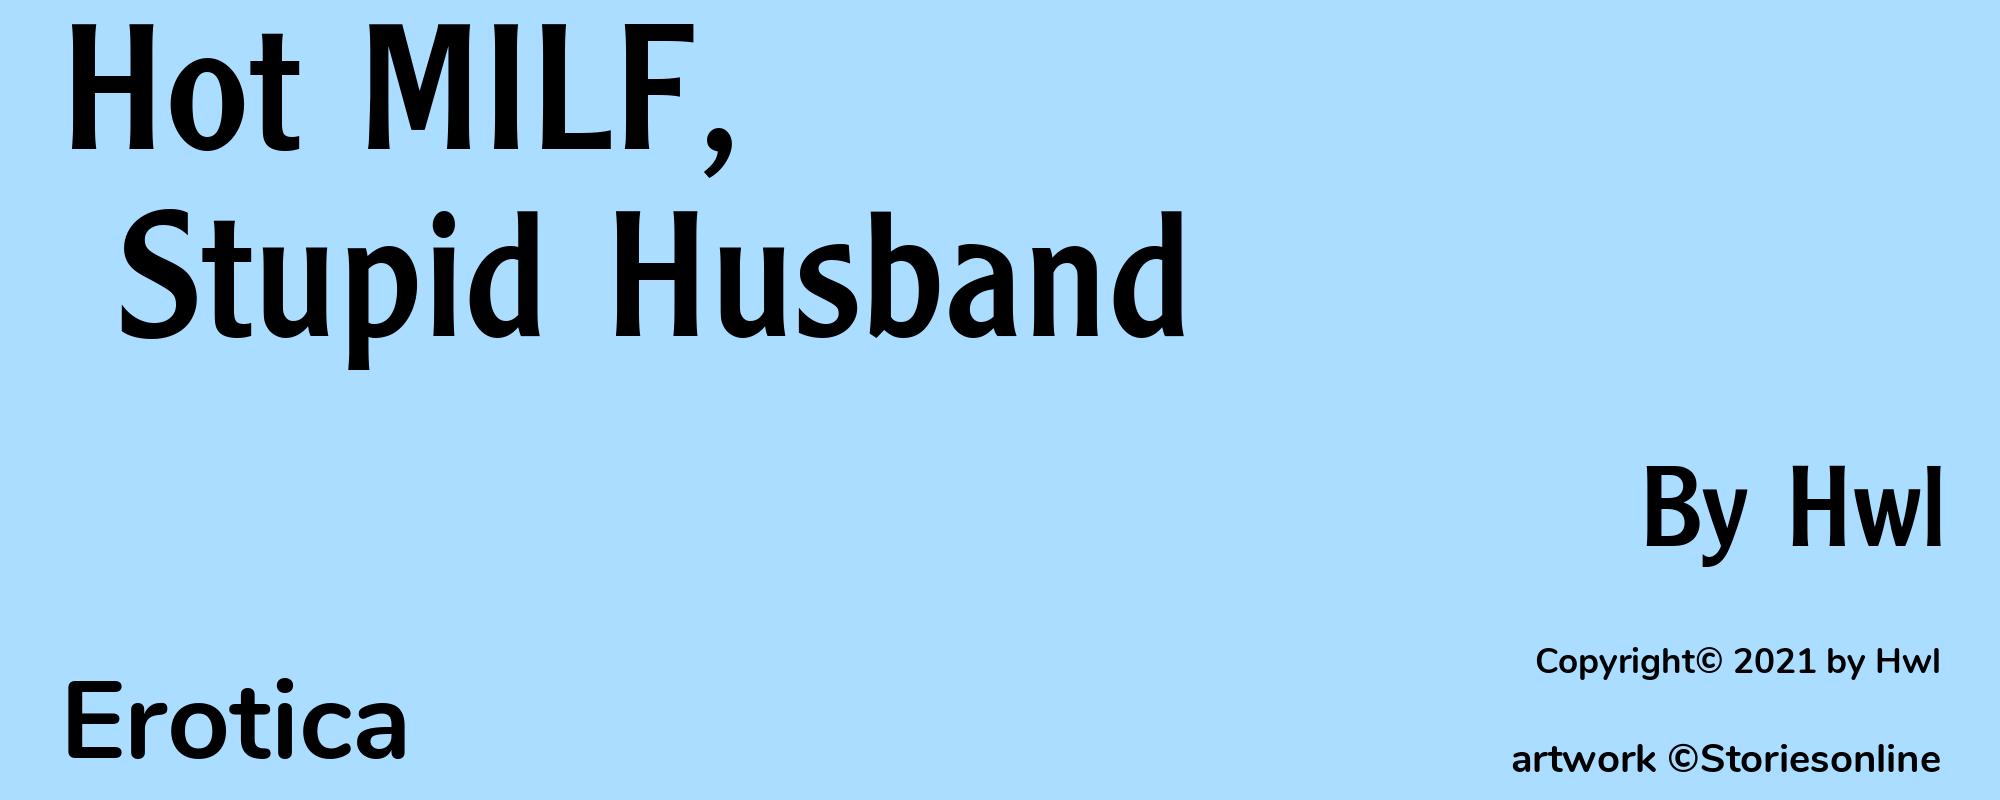 Hot MILF, Stupid Husband - Cover